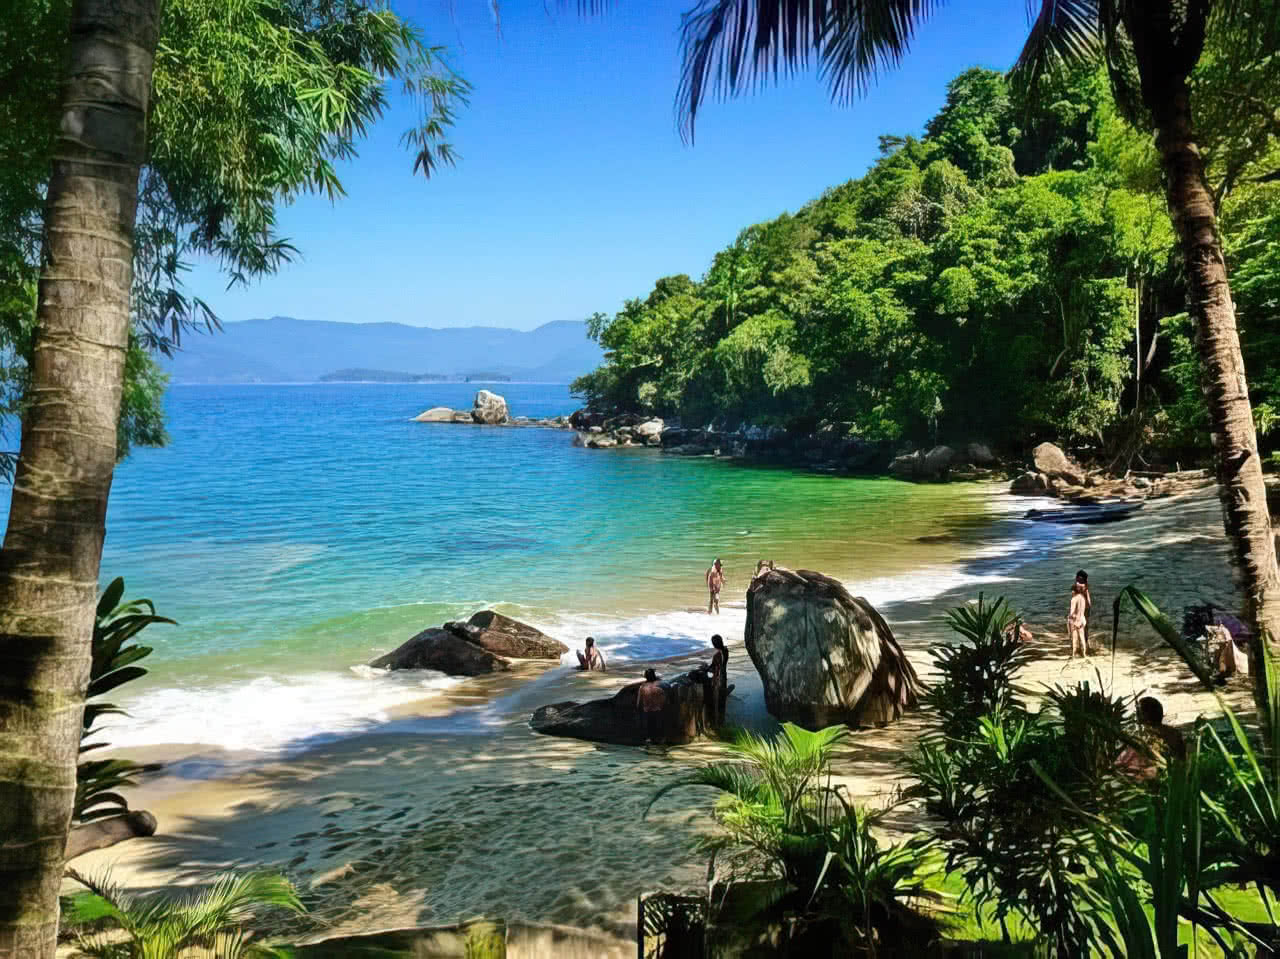 Imagem da Ilha das Couves, localizada no litoral norte de São Paulo. A ilha é um destino turístico popular por suas águas cristalinas e praias paradisíacas.